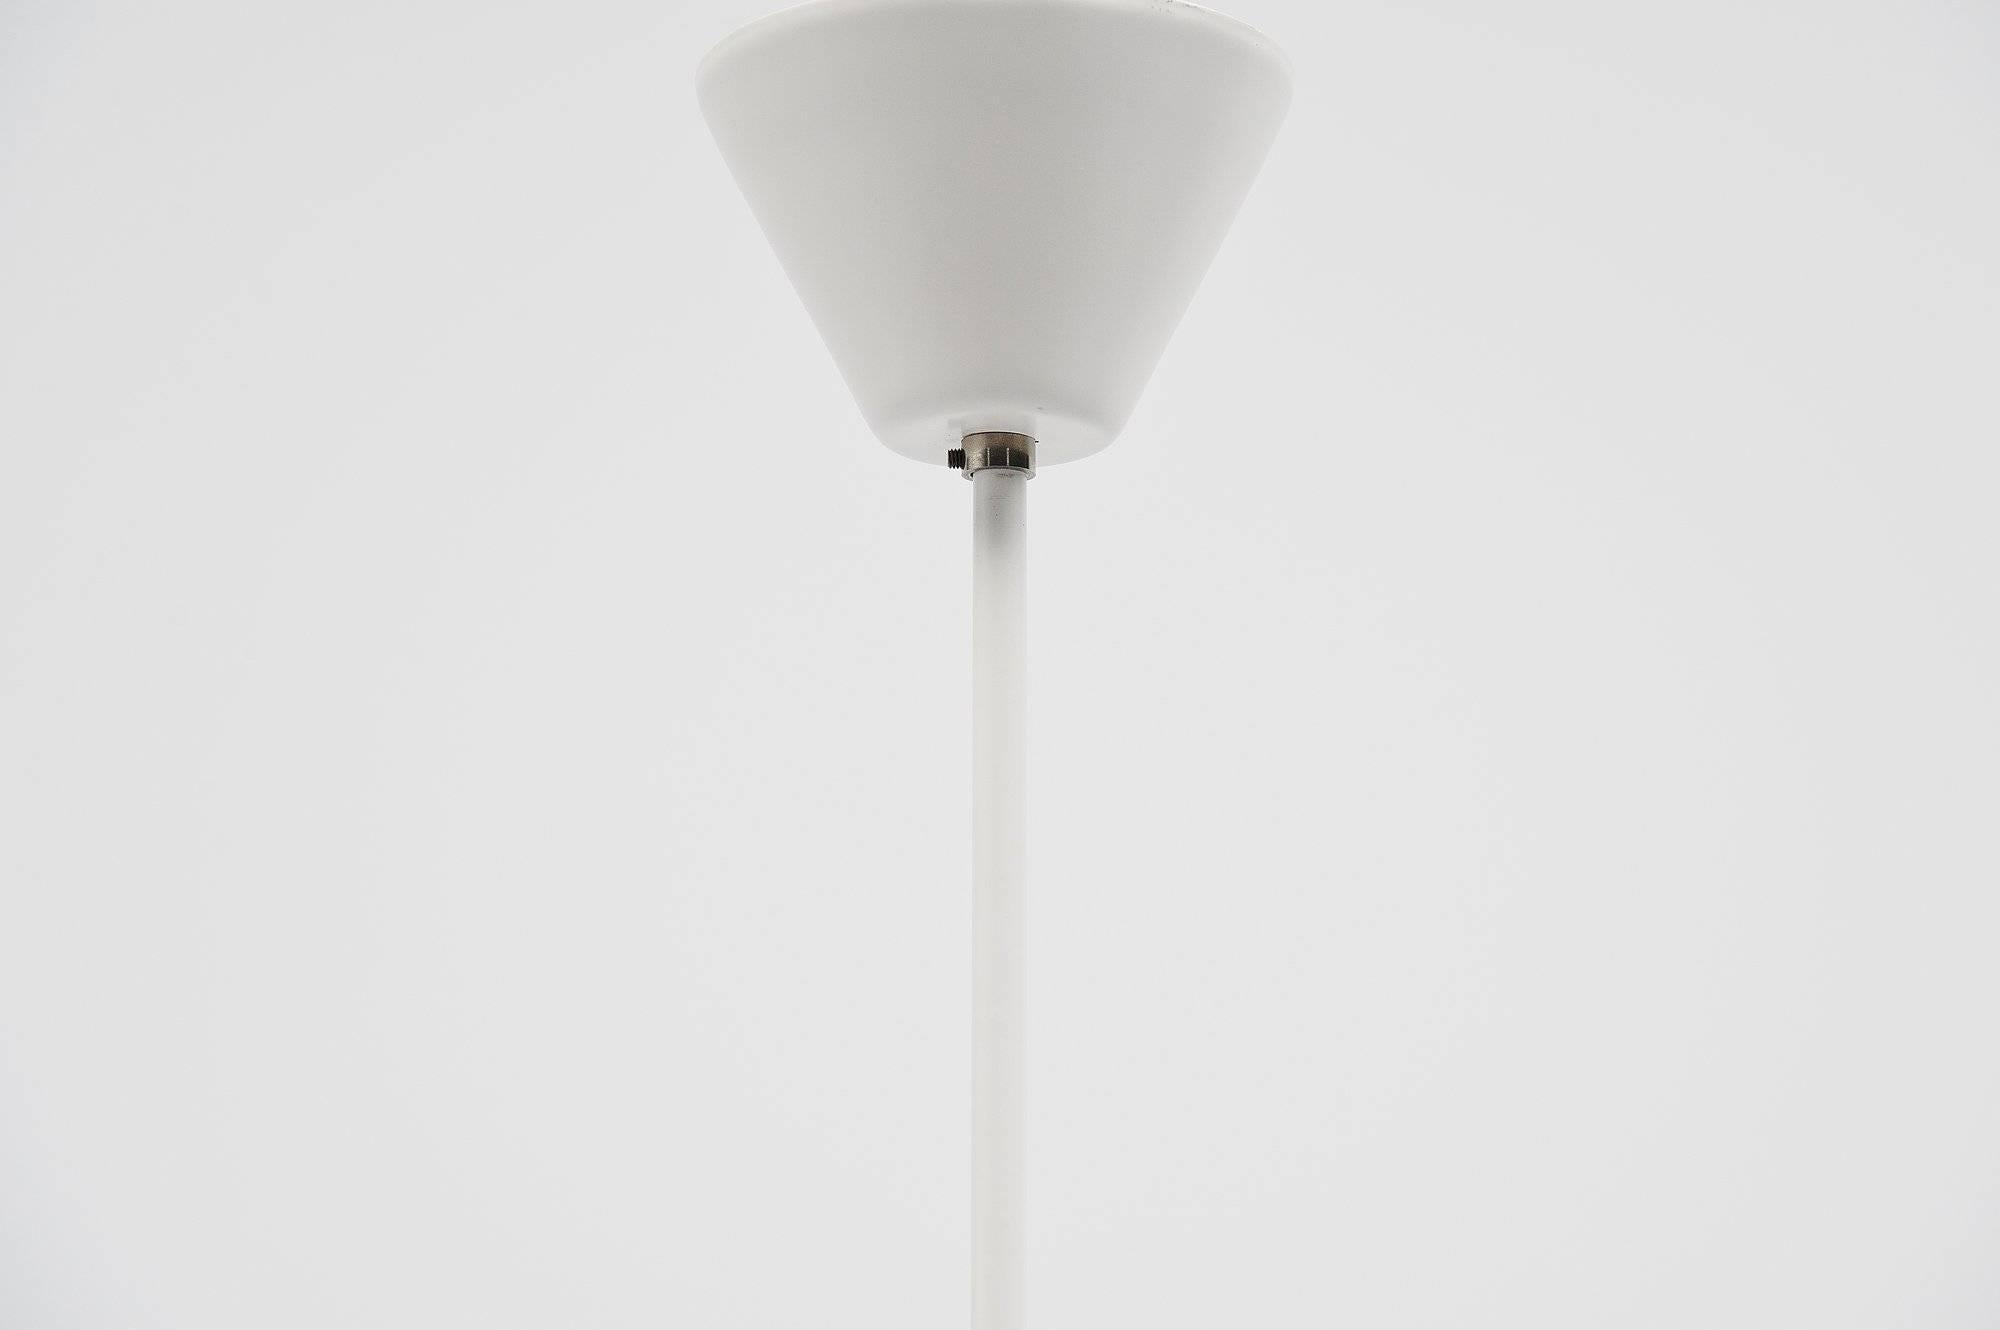 Metal Jjm Hoogervorst Anvia Counter Balance Ceiling Lamp, Holland, 1957 For Sale